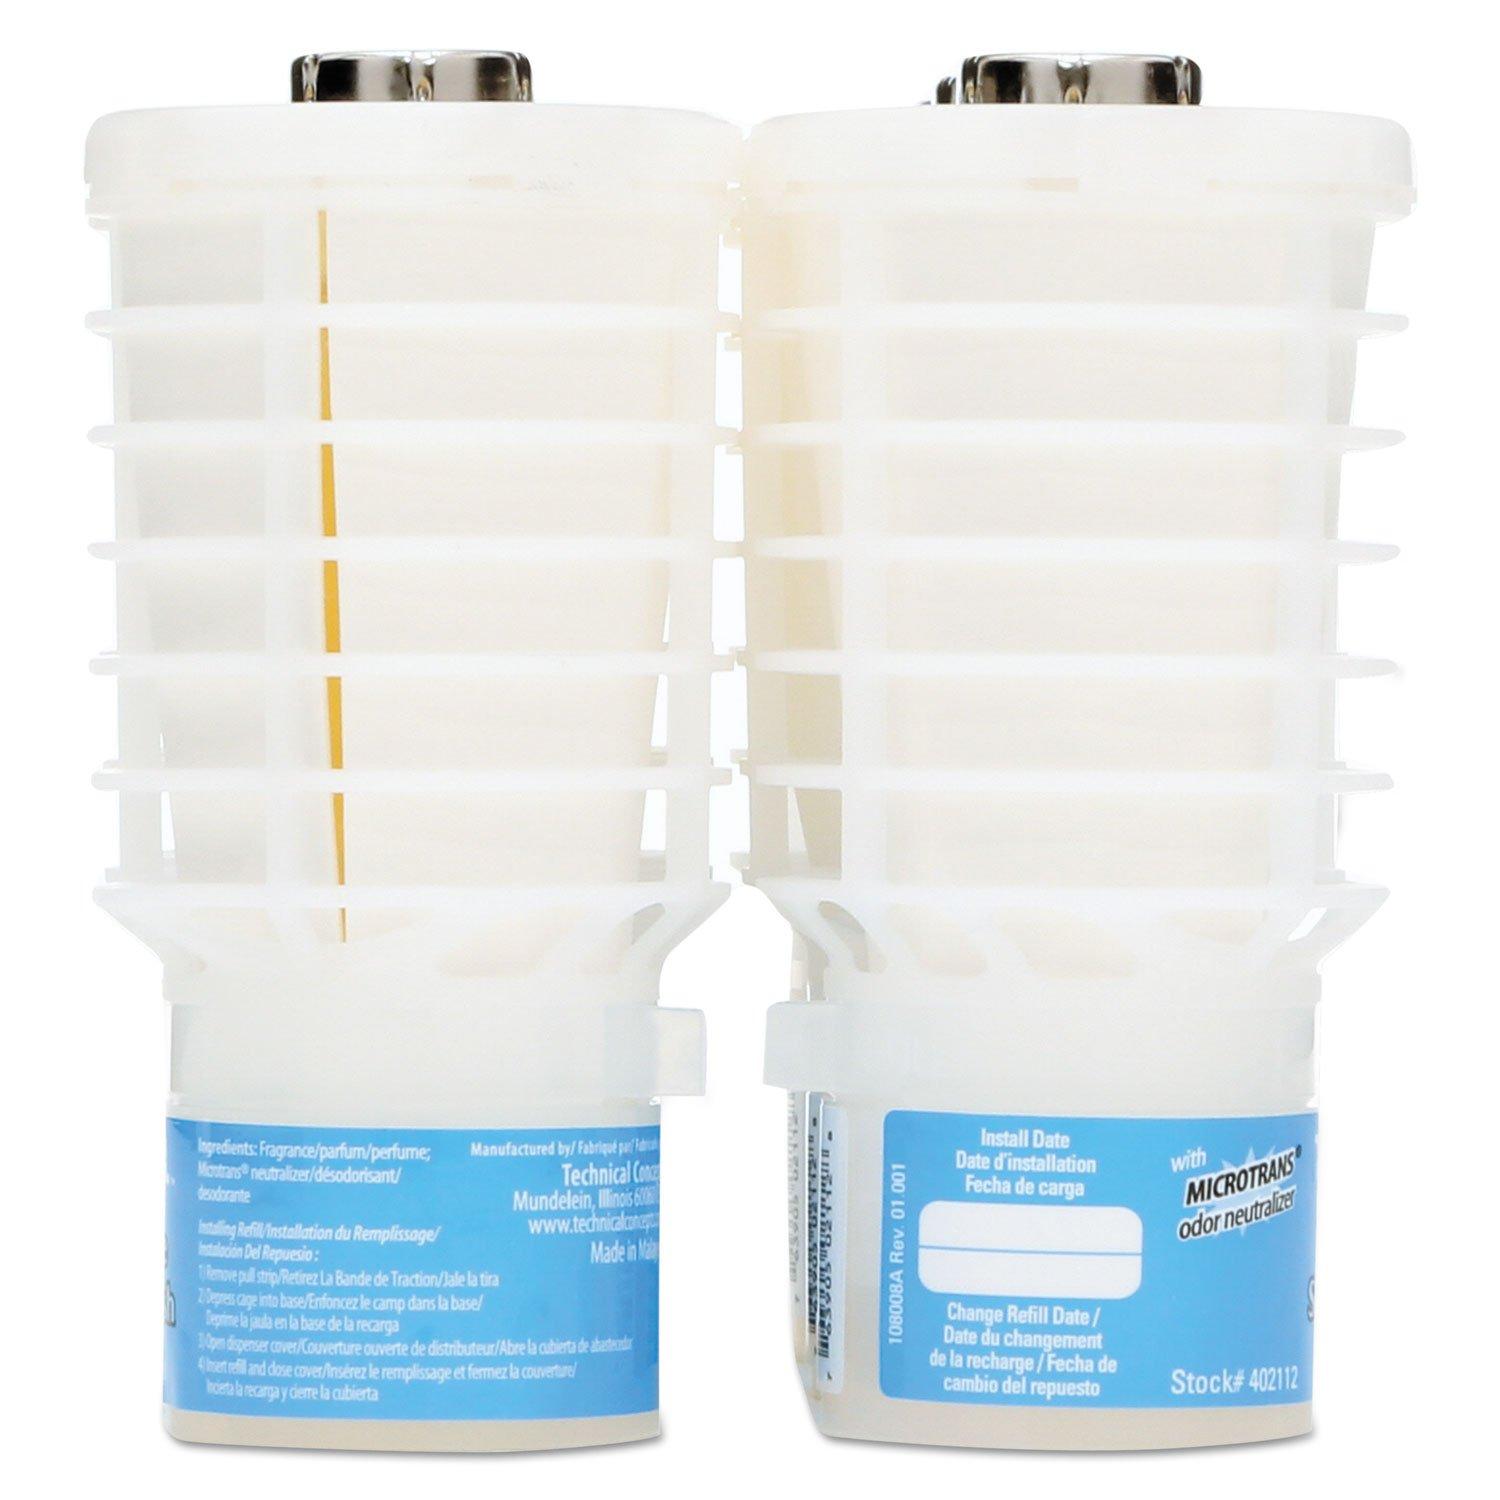 Blue Splash TCell Odor Neutralizer Refill, 6-Pack, White